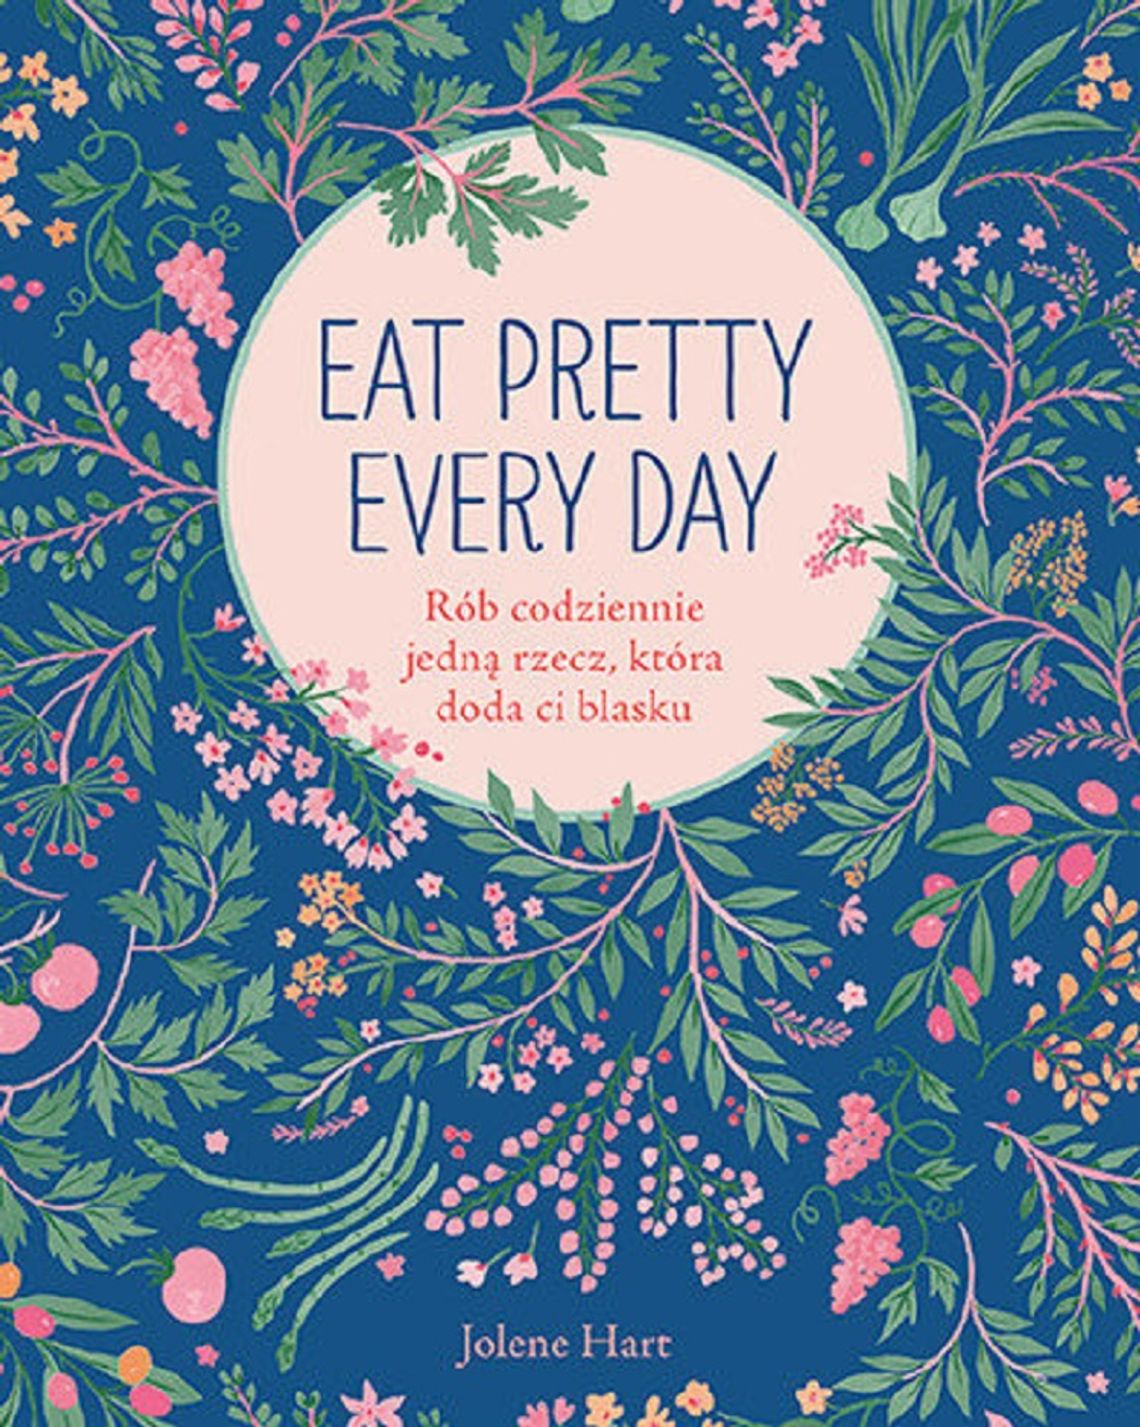 Jolene Hart  "Eat Pretty Every Day. Rób codziennie jedną rzecz, która doda ci blasku"; wyd. Znak